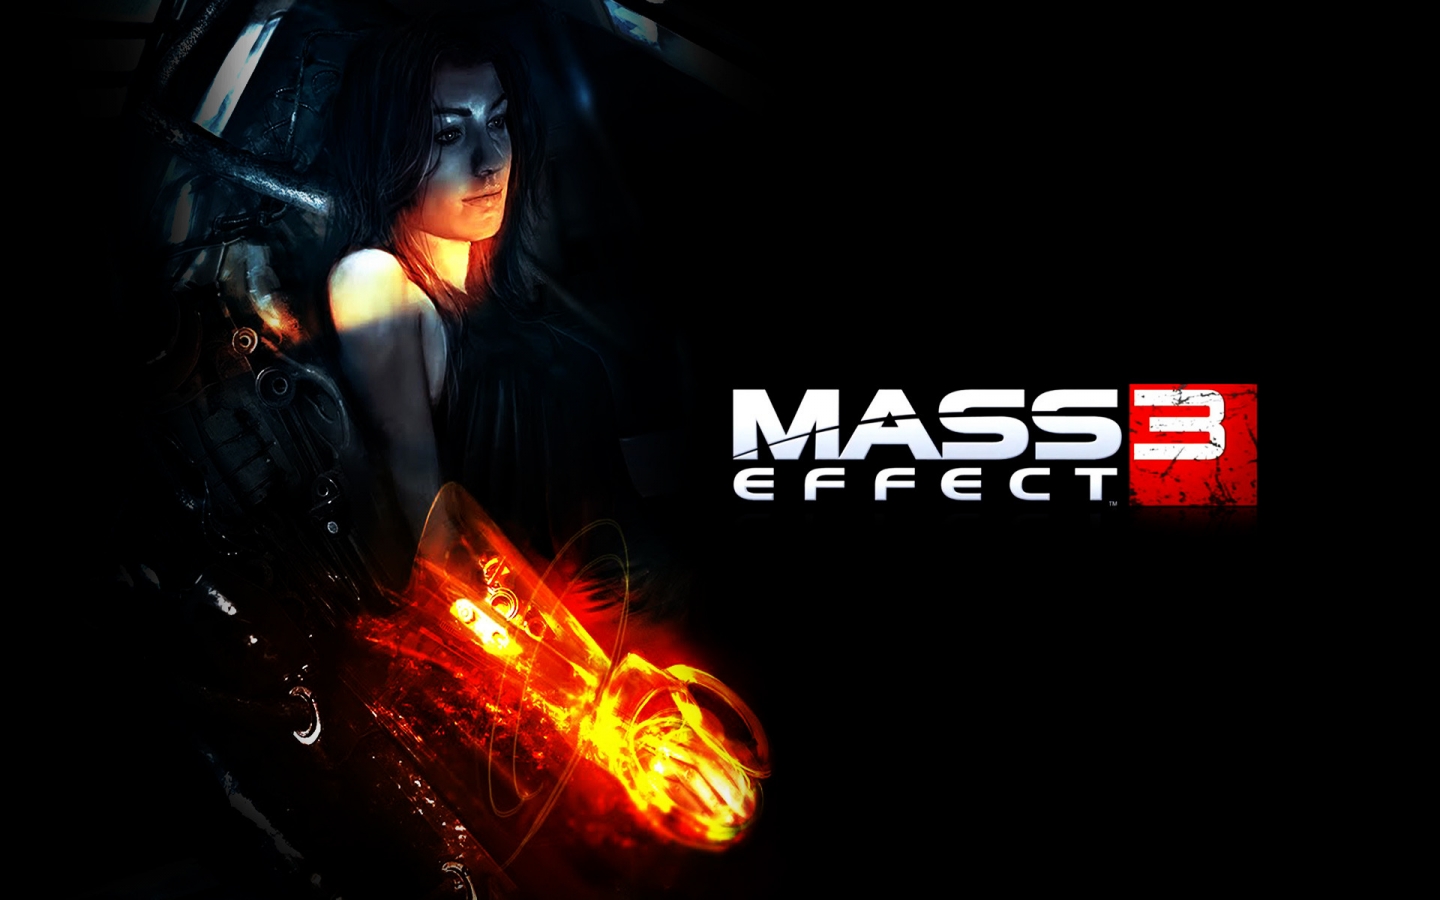 Miranda Mass Effect 3 for 1440 x 900 widescreen resolution